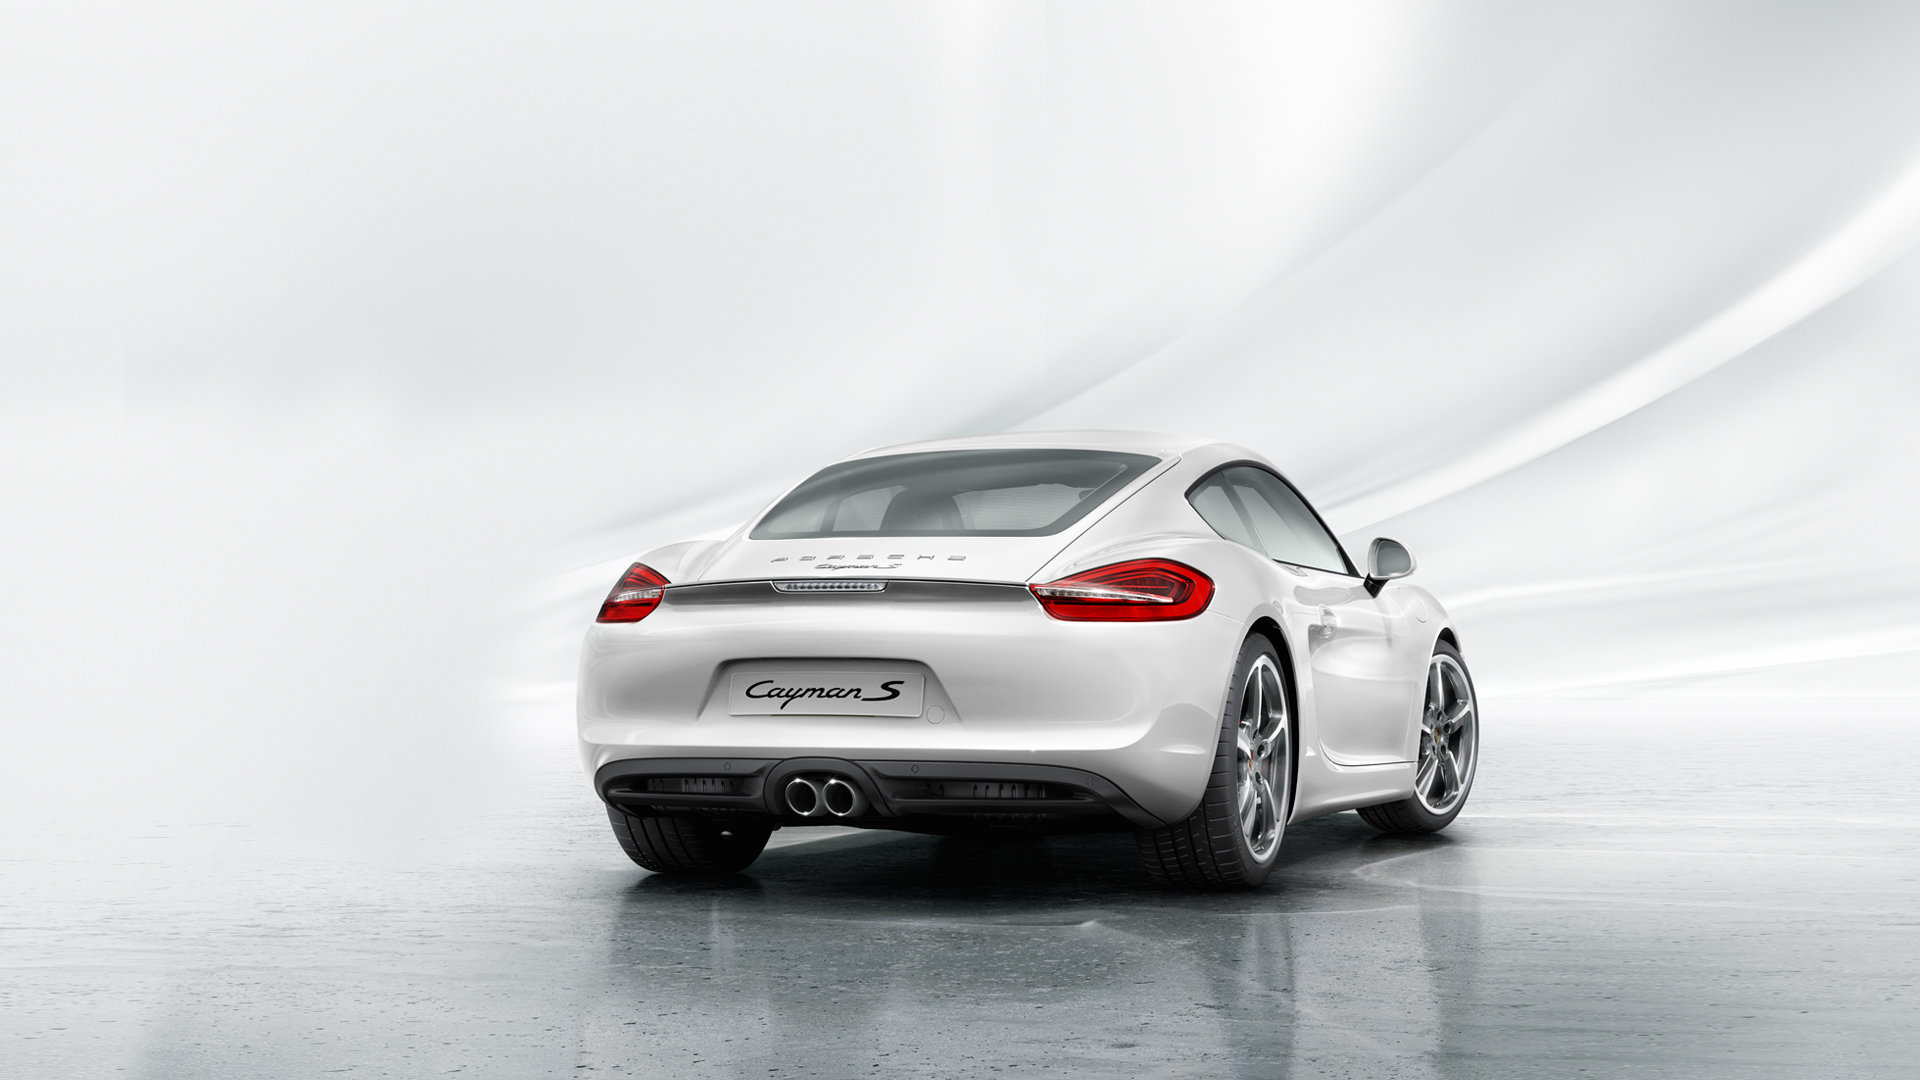 Best Porsche Cayman S wallpaper ID:365871 for High Resolution full hd desktop